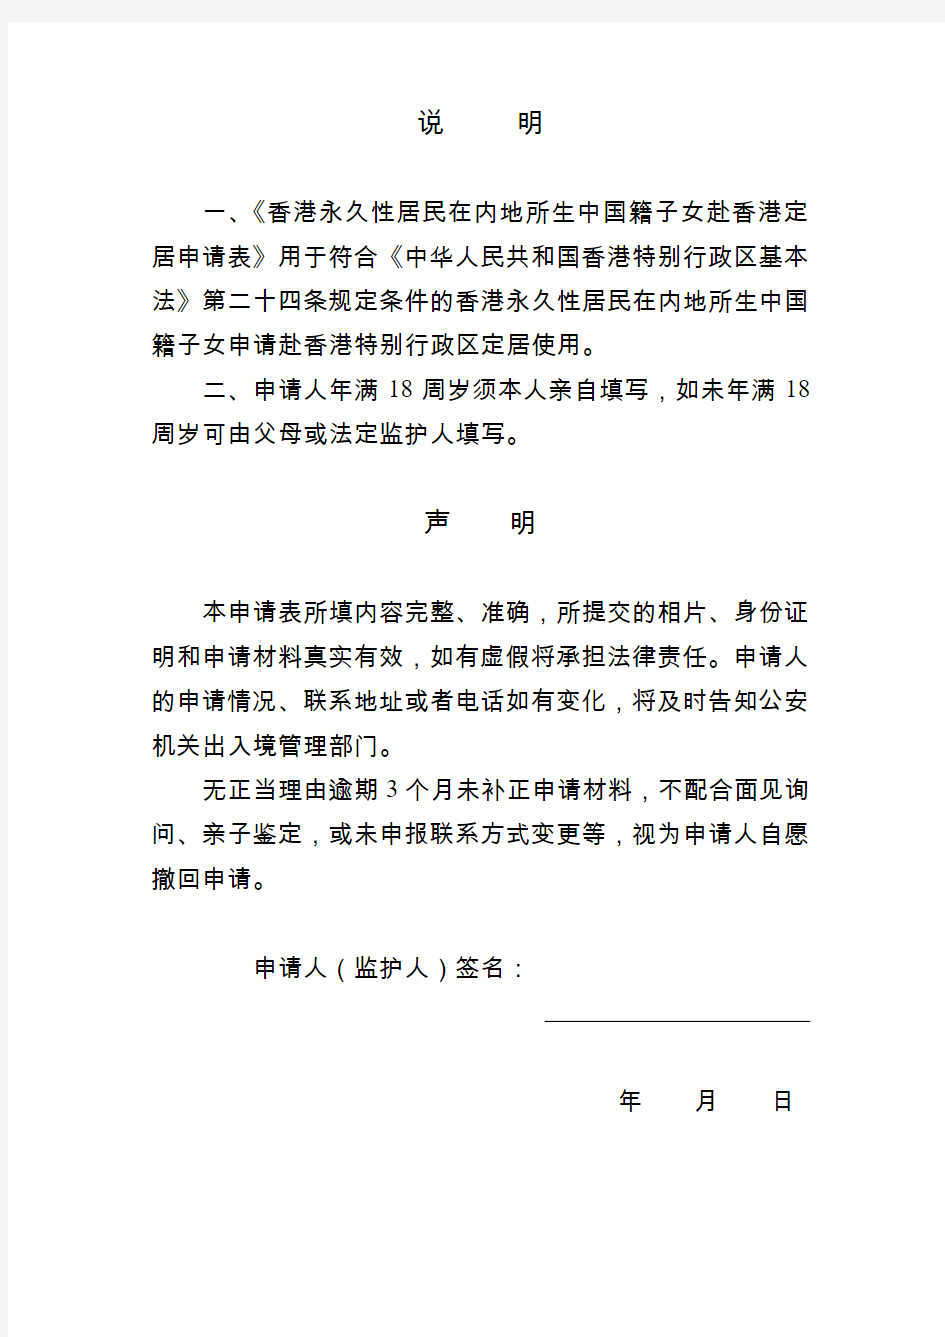 香港永久性居民在内地所生中国籍